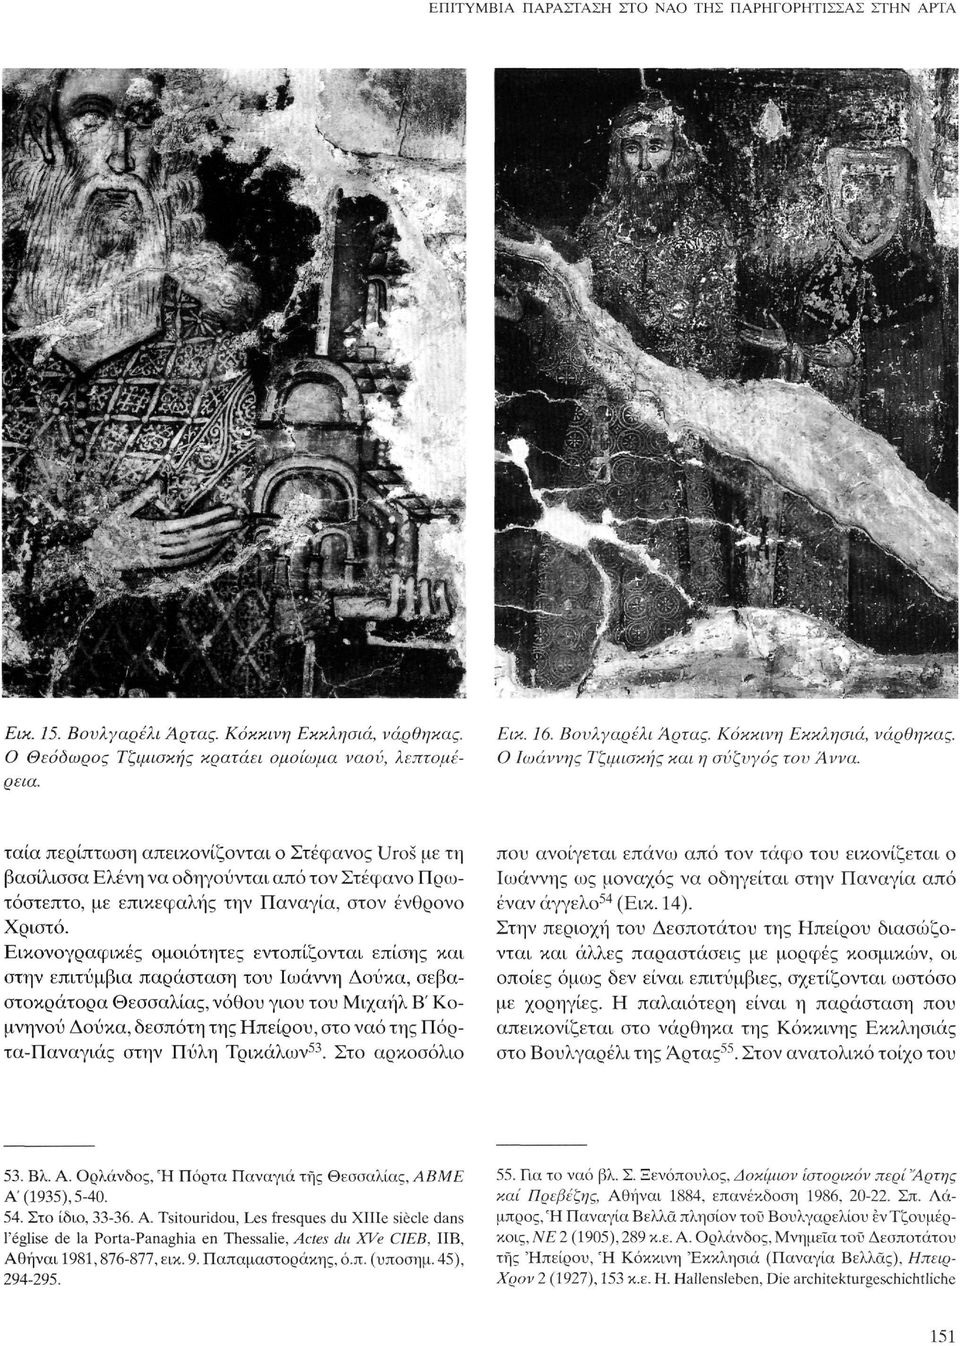 Εικονογραφικές ομοιότητες εντοπίζονται επίσης και στην επιτύμβια παράσταση του Ιωάννη Δούκα, σεβαστοκράτορα Θεσσαλίας, νόθου γιου του Μιχαήλ Β' Κομνηνού Δούκα, δεσπότη της Ηπείρου, στο ναό της